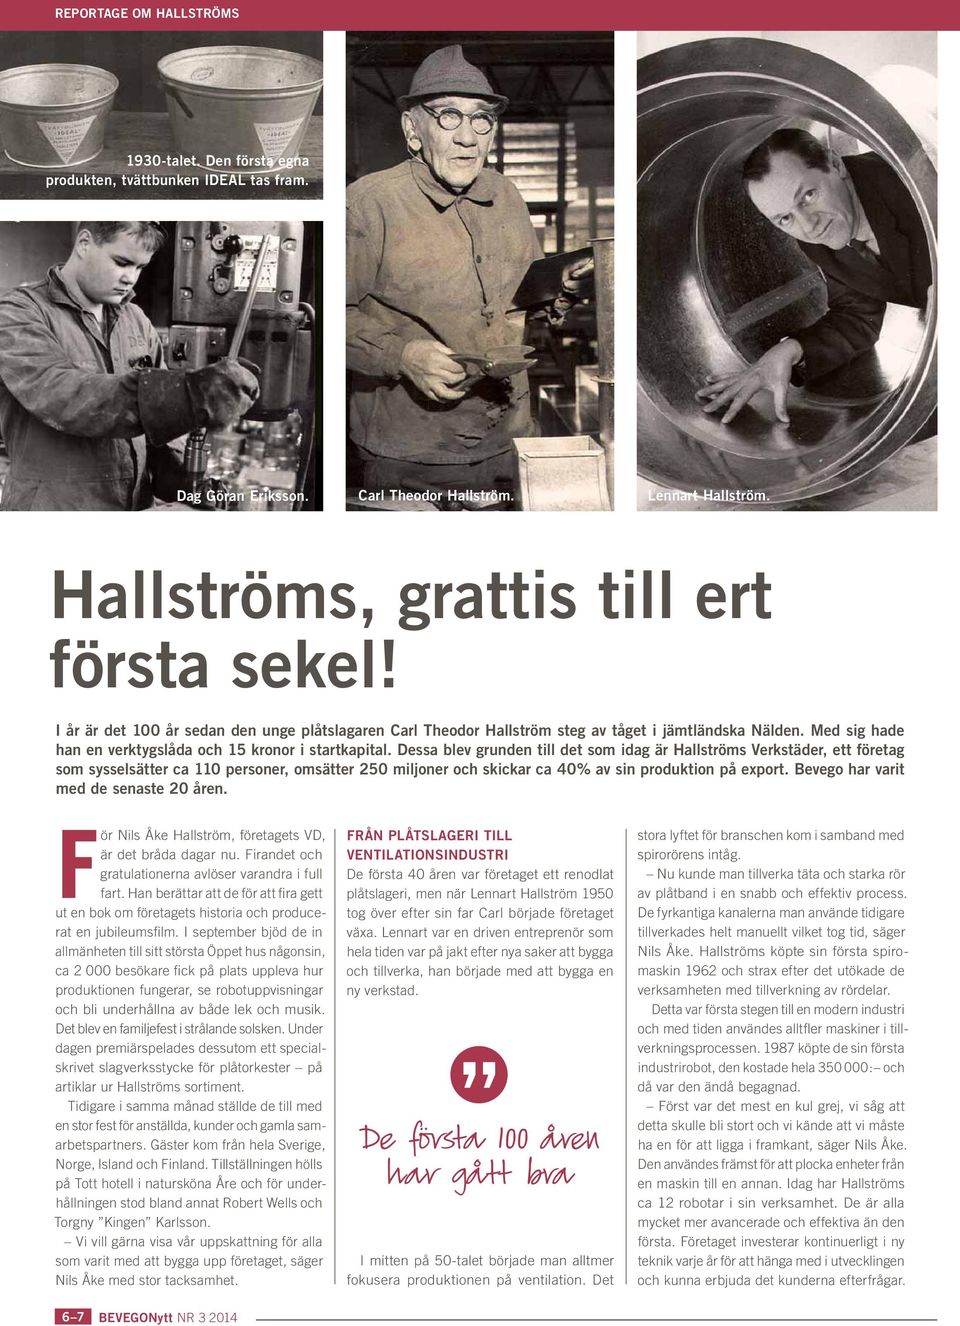 Dessa blev grunden till det som idag är Hallströms Verkstäder, ett företag som sysselsätter ca 110 personer, omsätter 250 miljoner och skickar ca 40% av sin produktion på export.